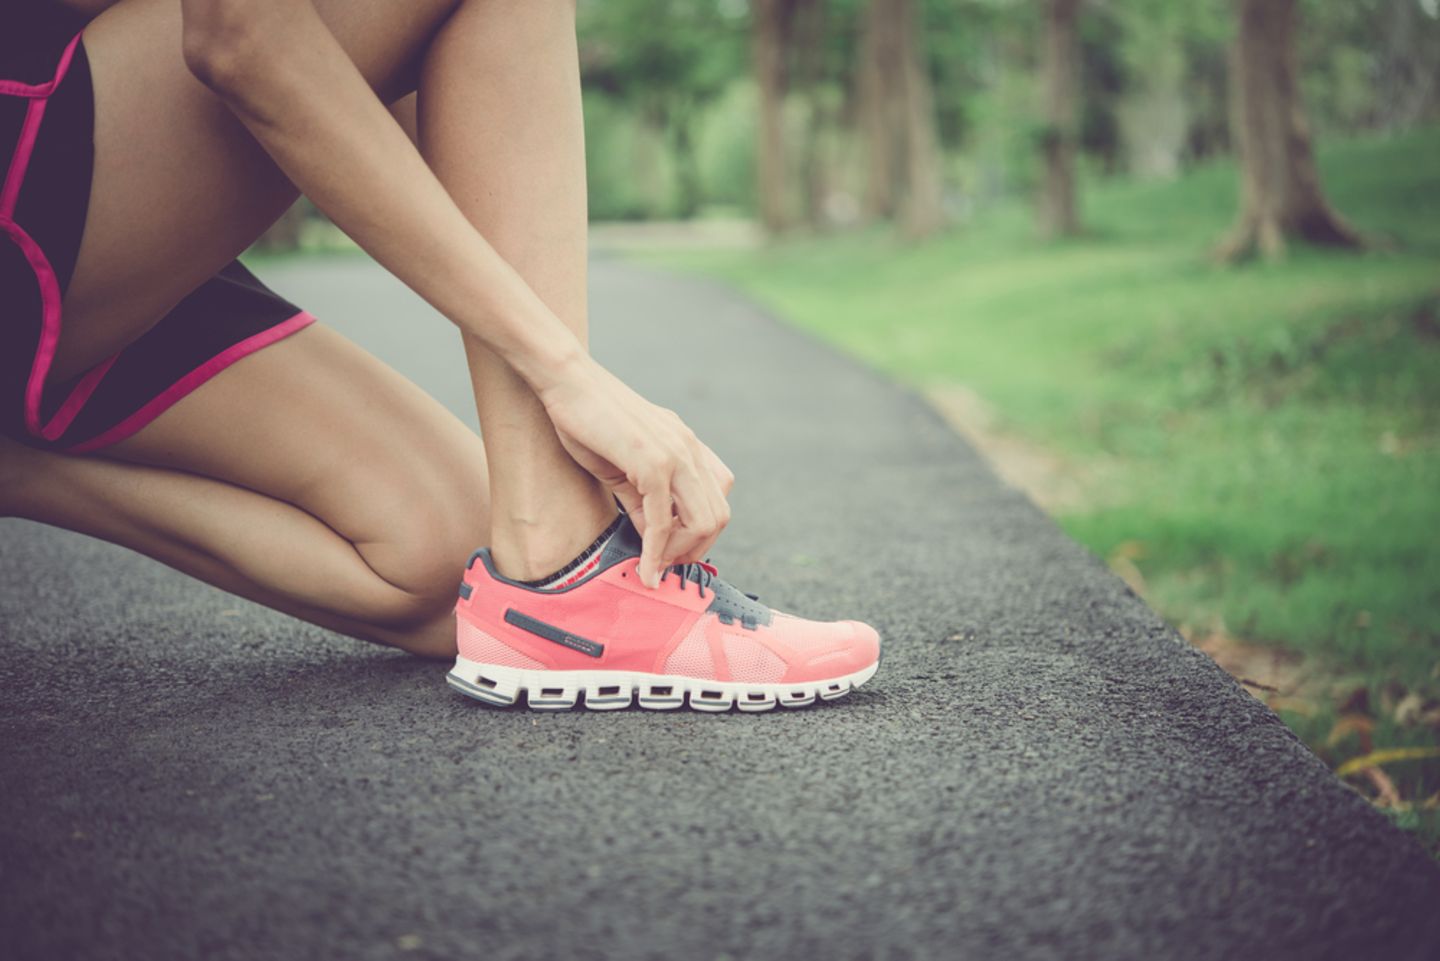 Bindegewebe stärken: Frau bindet ihre Laufschuhe